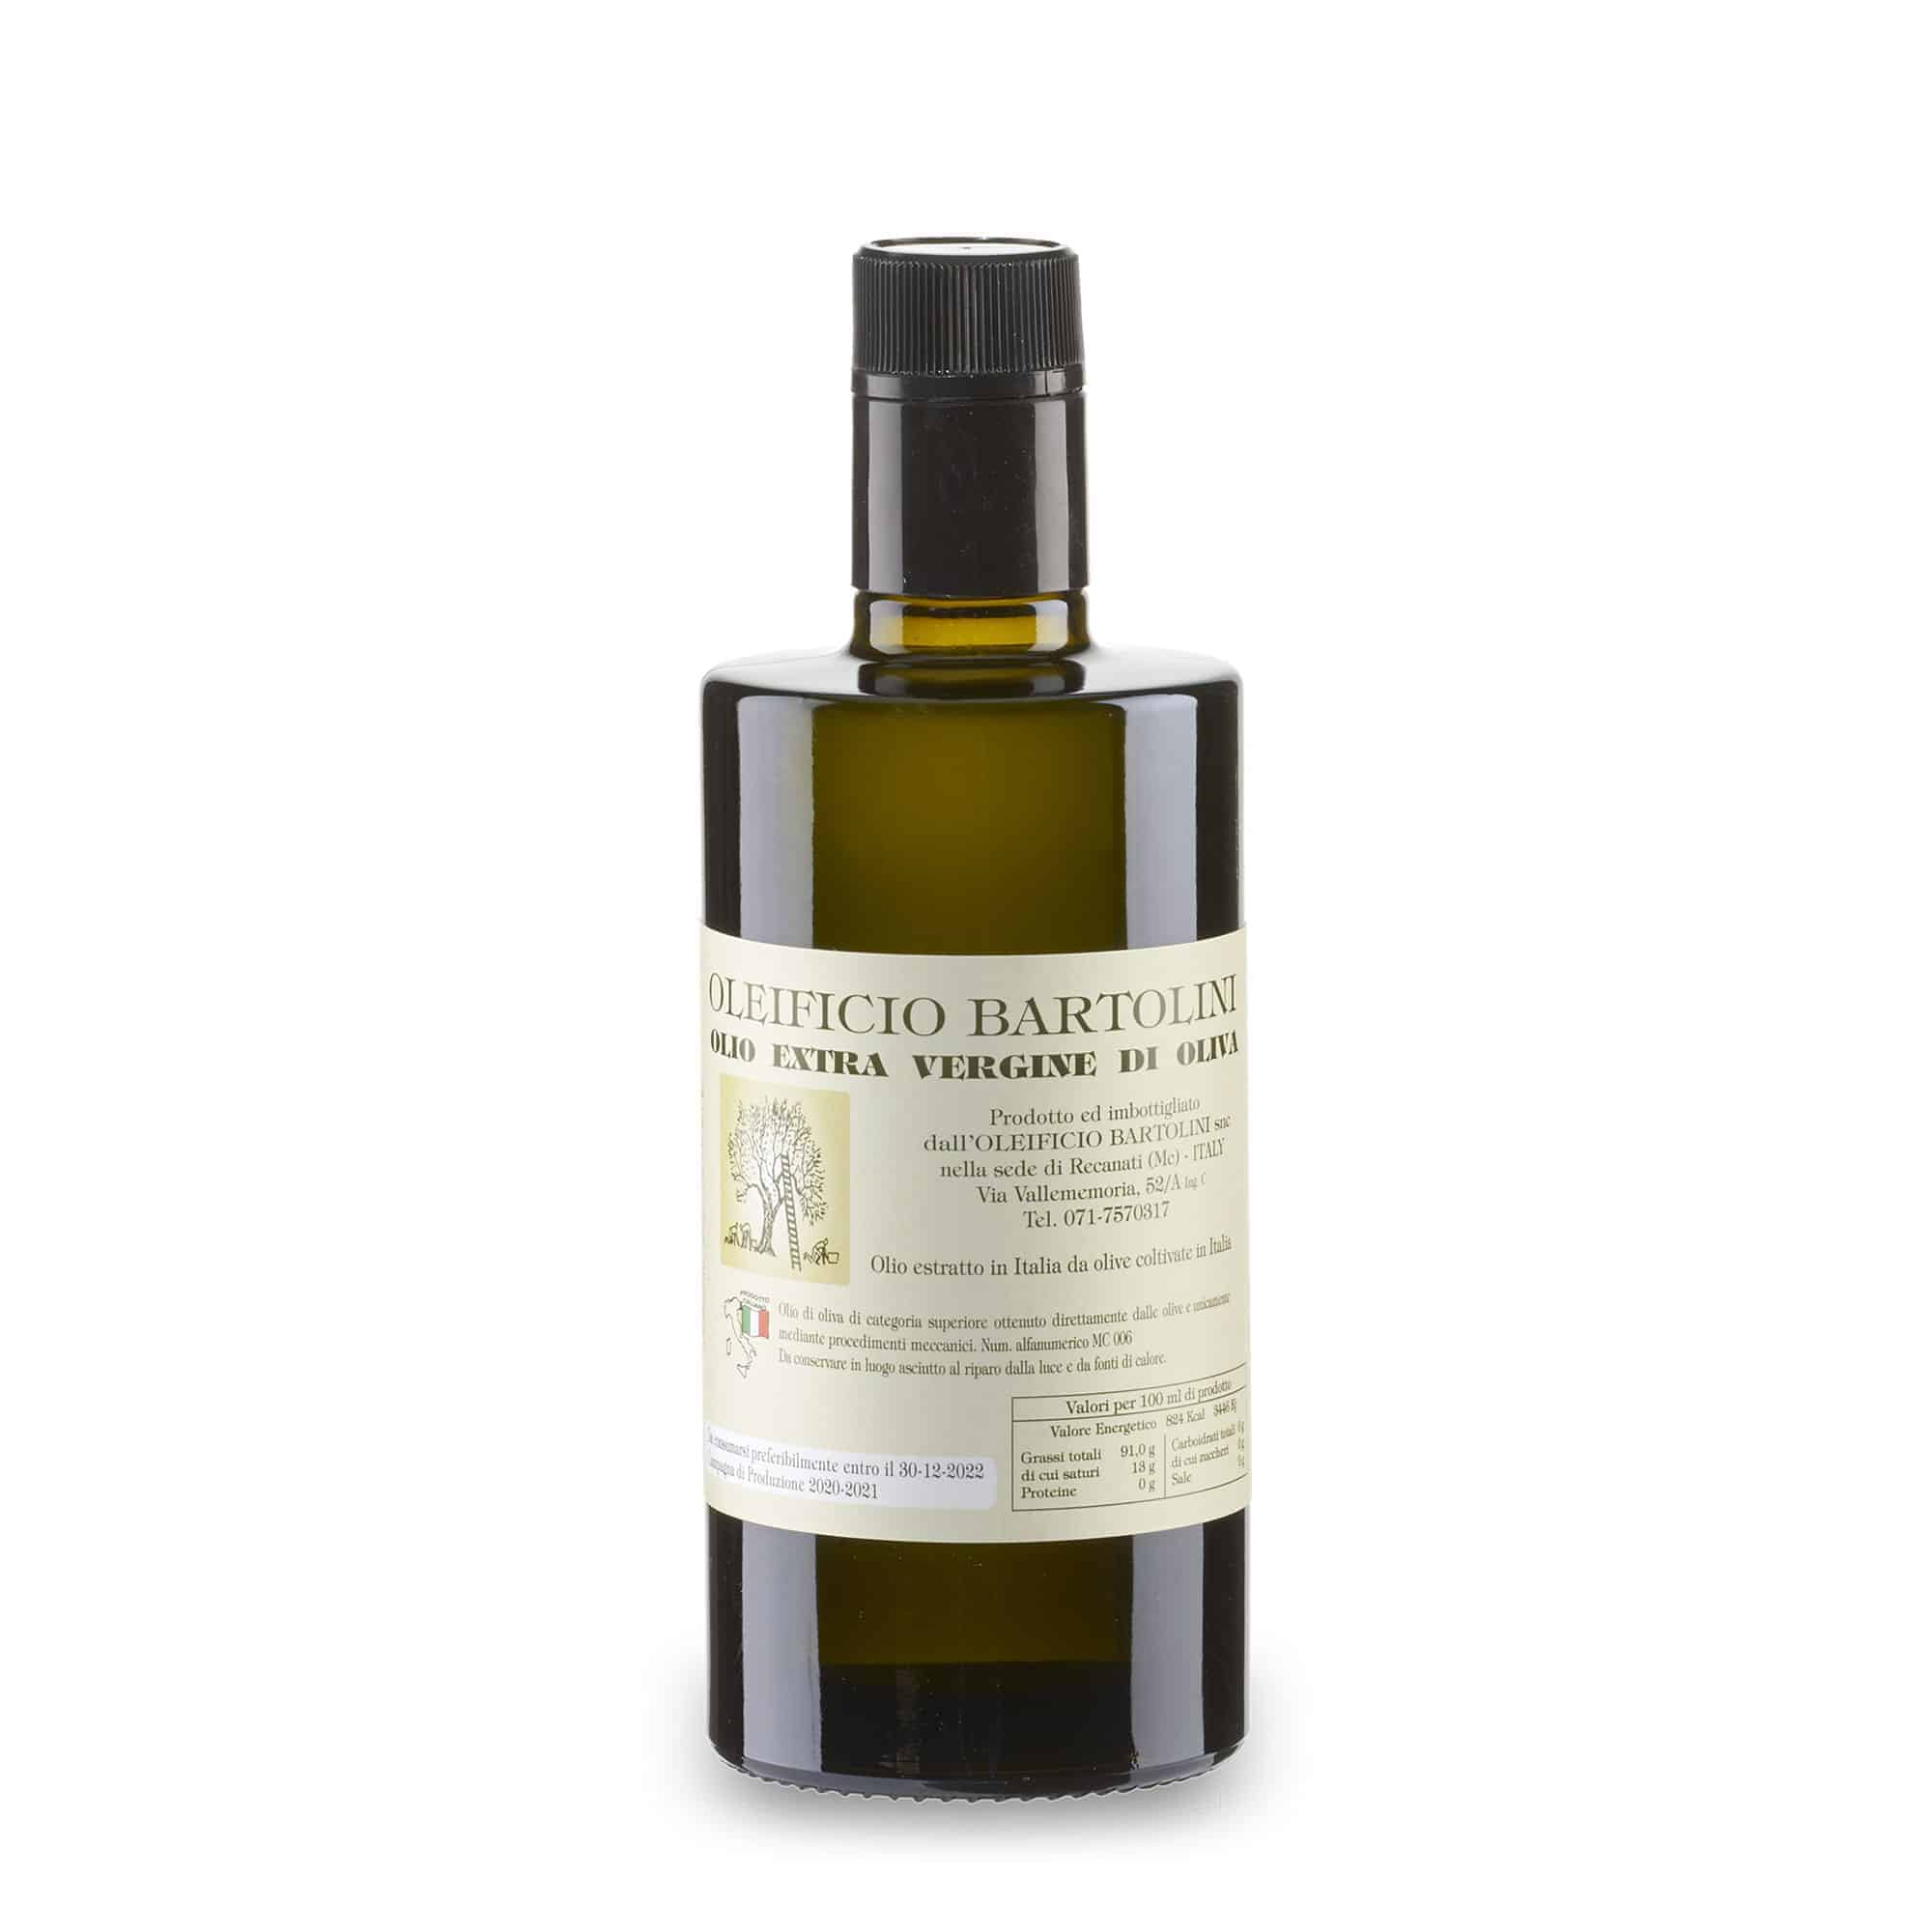 Olio extra vergine d’oliva italiano: come riconoscerlo